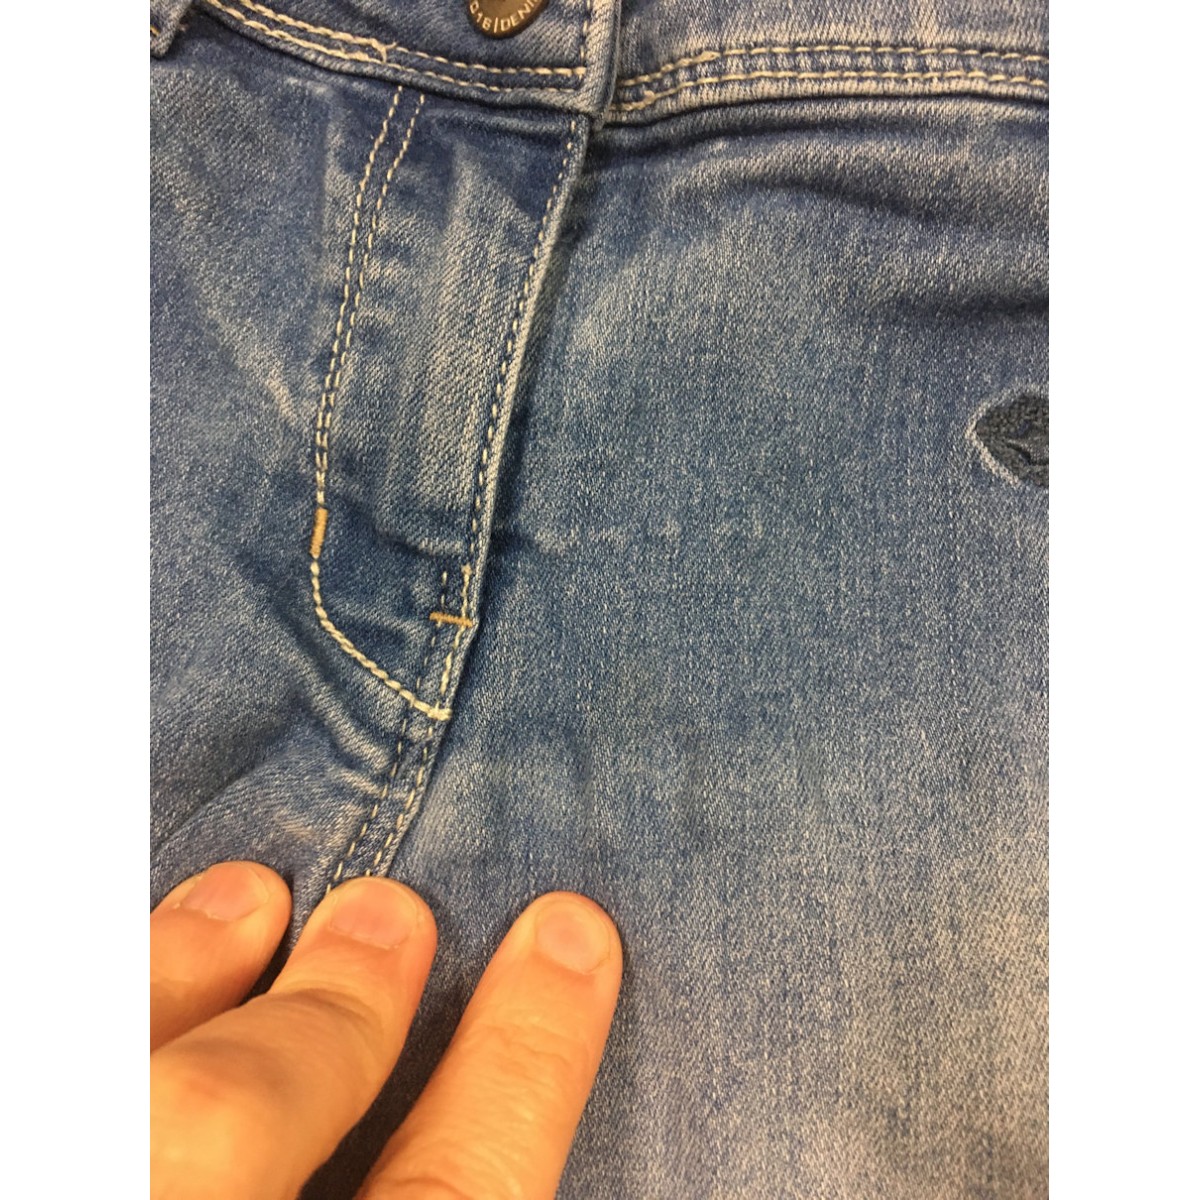 short jeans parasuco / 10 ans